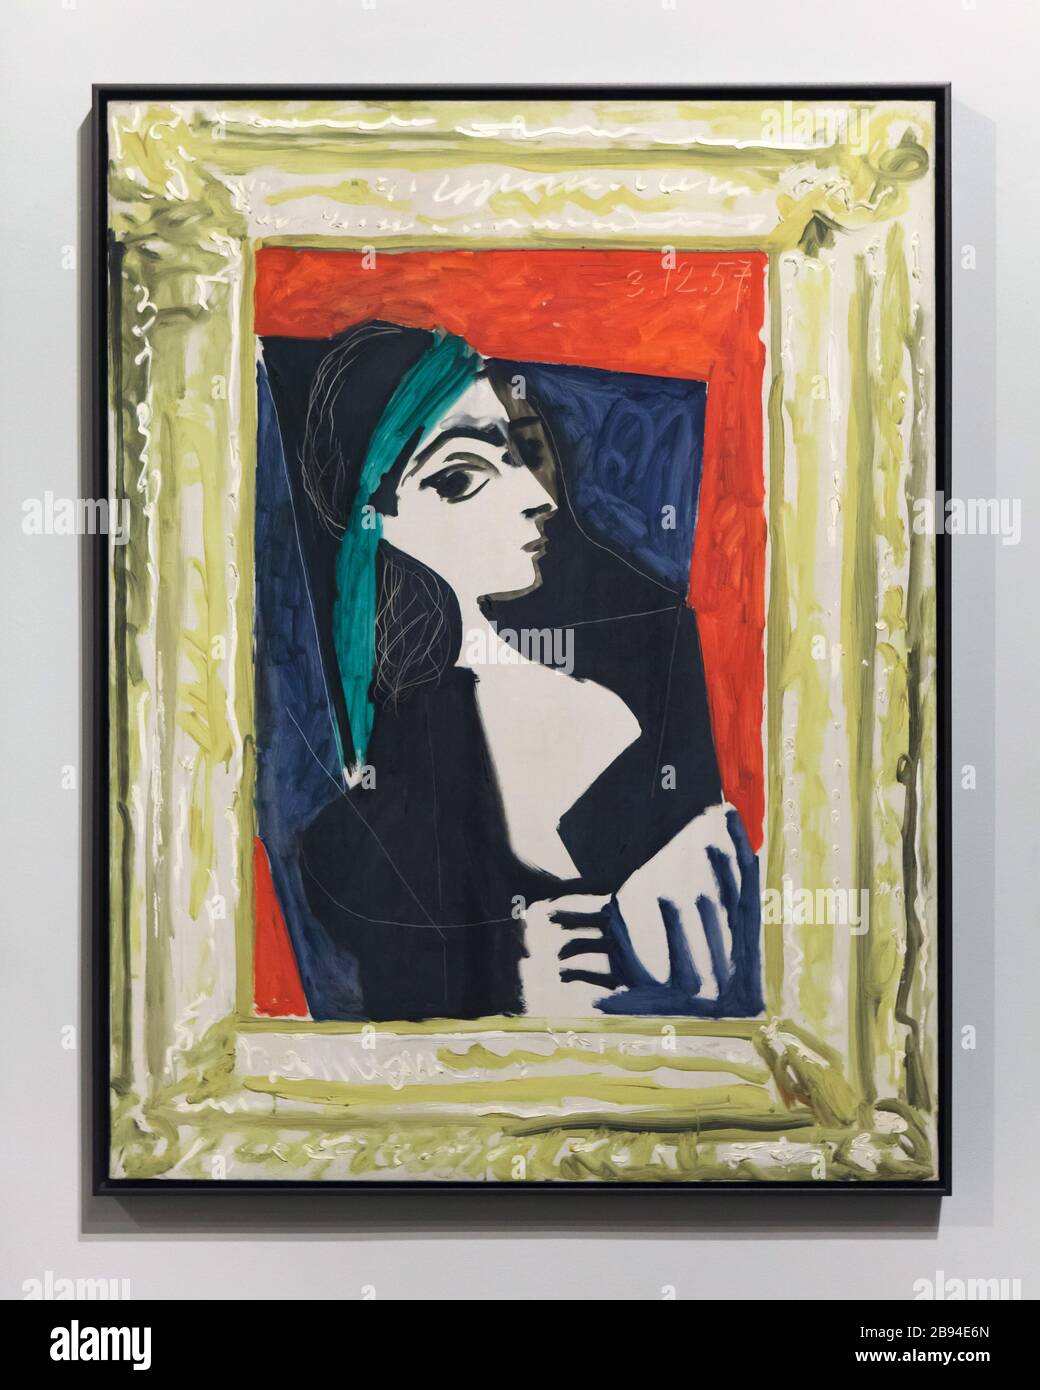 Das Gemälde "Jacqueline" von Pablo Picasso, das am 3. Dezember 1957 in Cannes (Frankreich) gemalt wurde, wurde im Museum du Picasso (Picasso-Museum) in Barcelona, Katalonien, Spanien ausgestellt. Jacqueline Roque, später bekannt als Jacqueline Picasso, war die Muse und zweite Frau von Pablo Picasso. Sie heirateten am 2. März 1961. Stockfoto